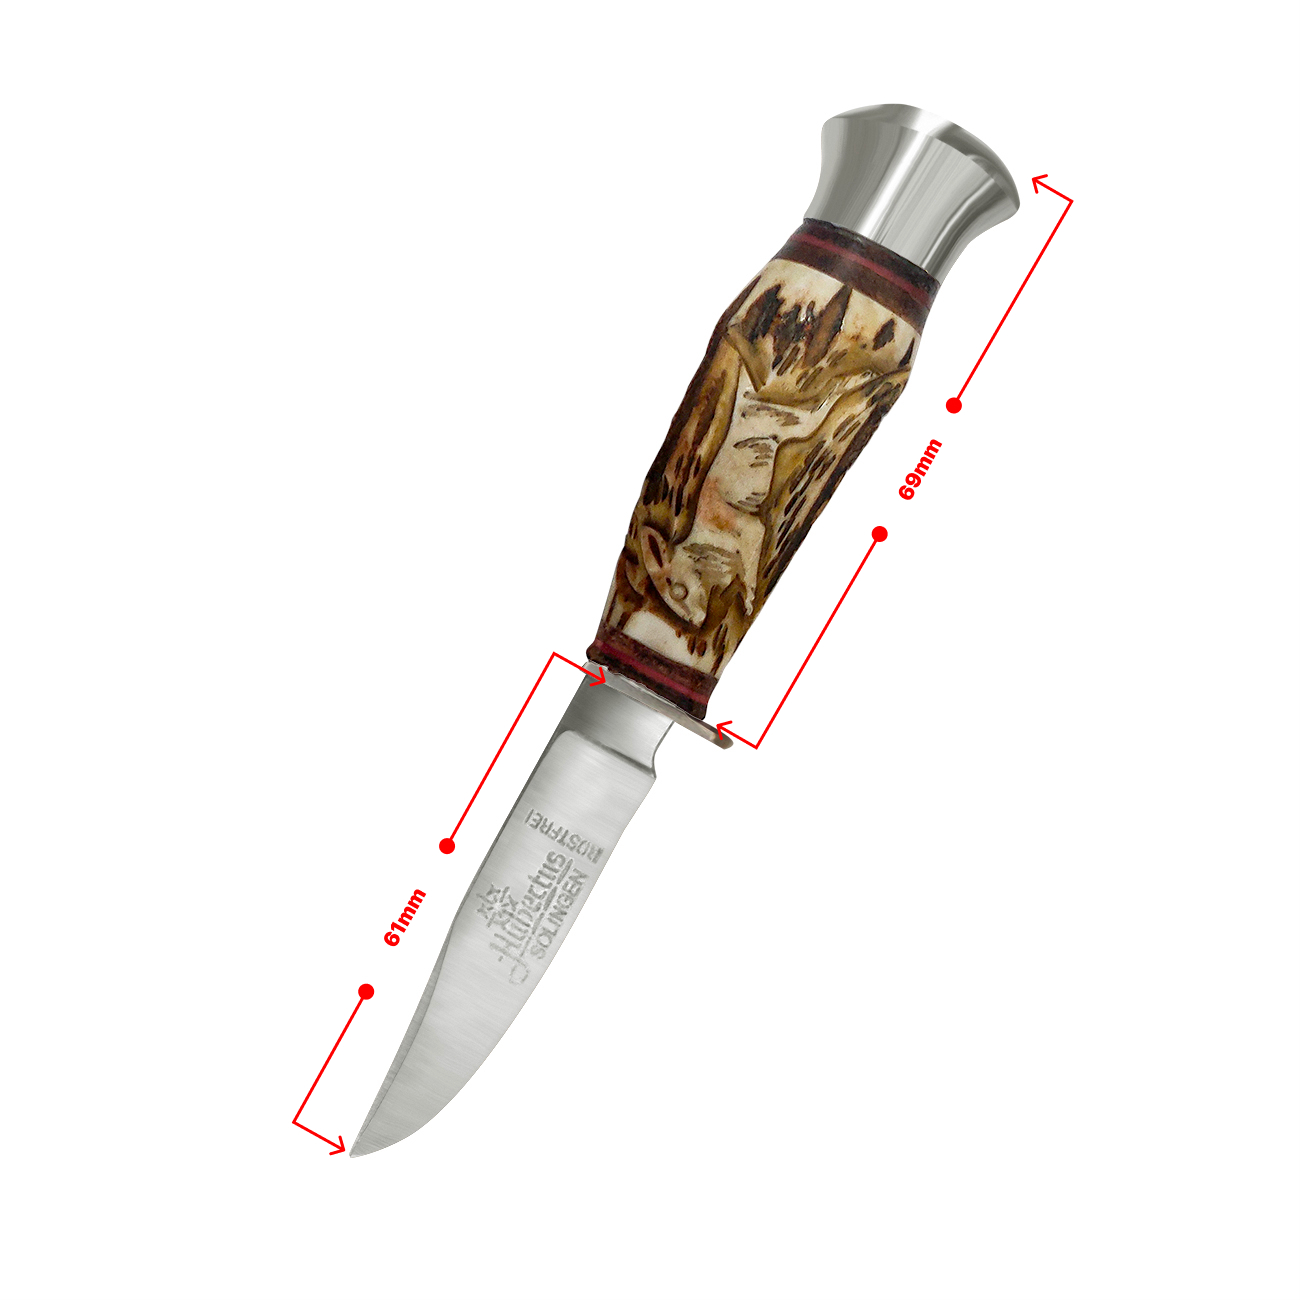 Hubertus El Yapımı Geyik Boynuzu Tavşan İşlemeli Minik Av Bıçağı